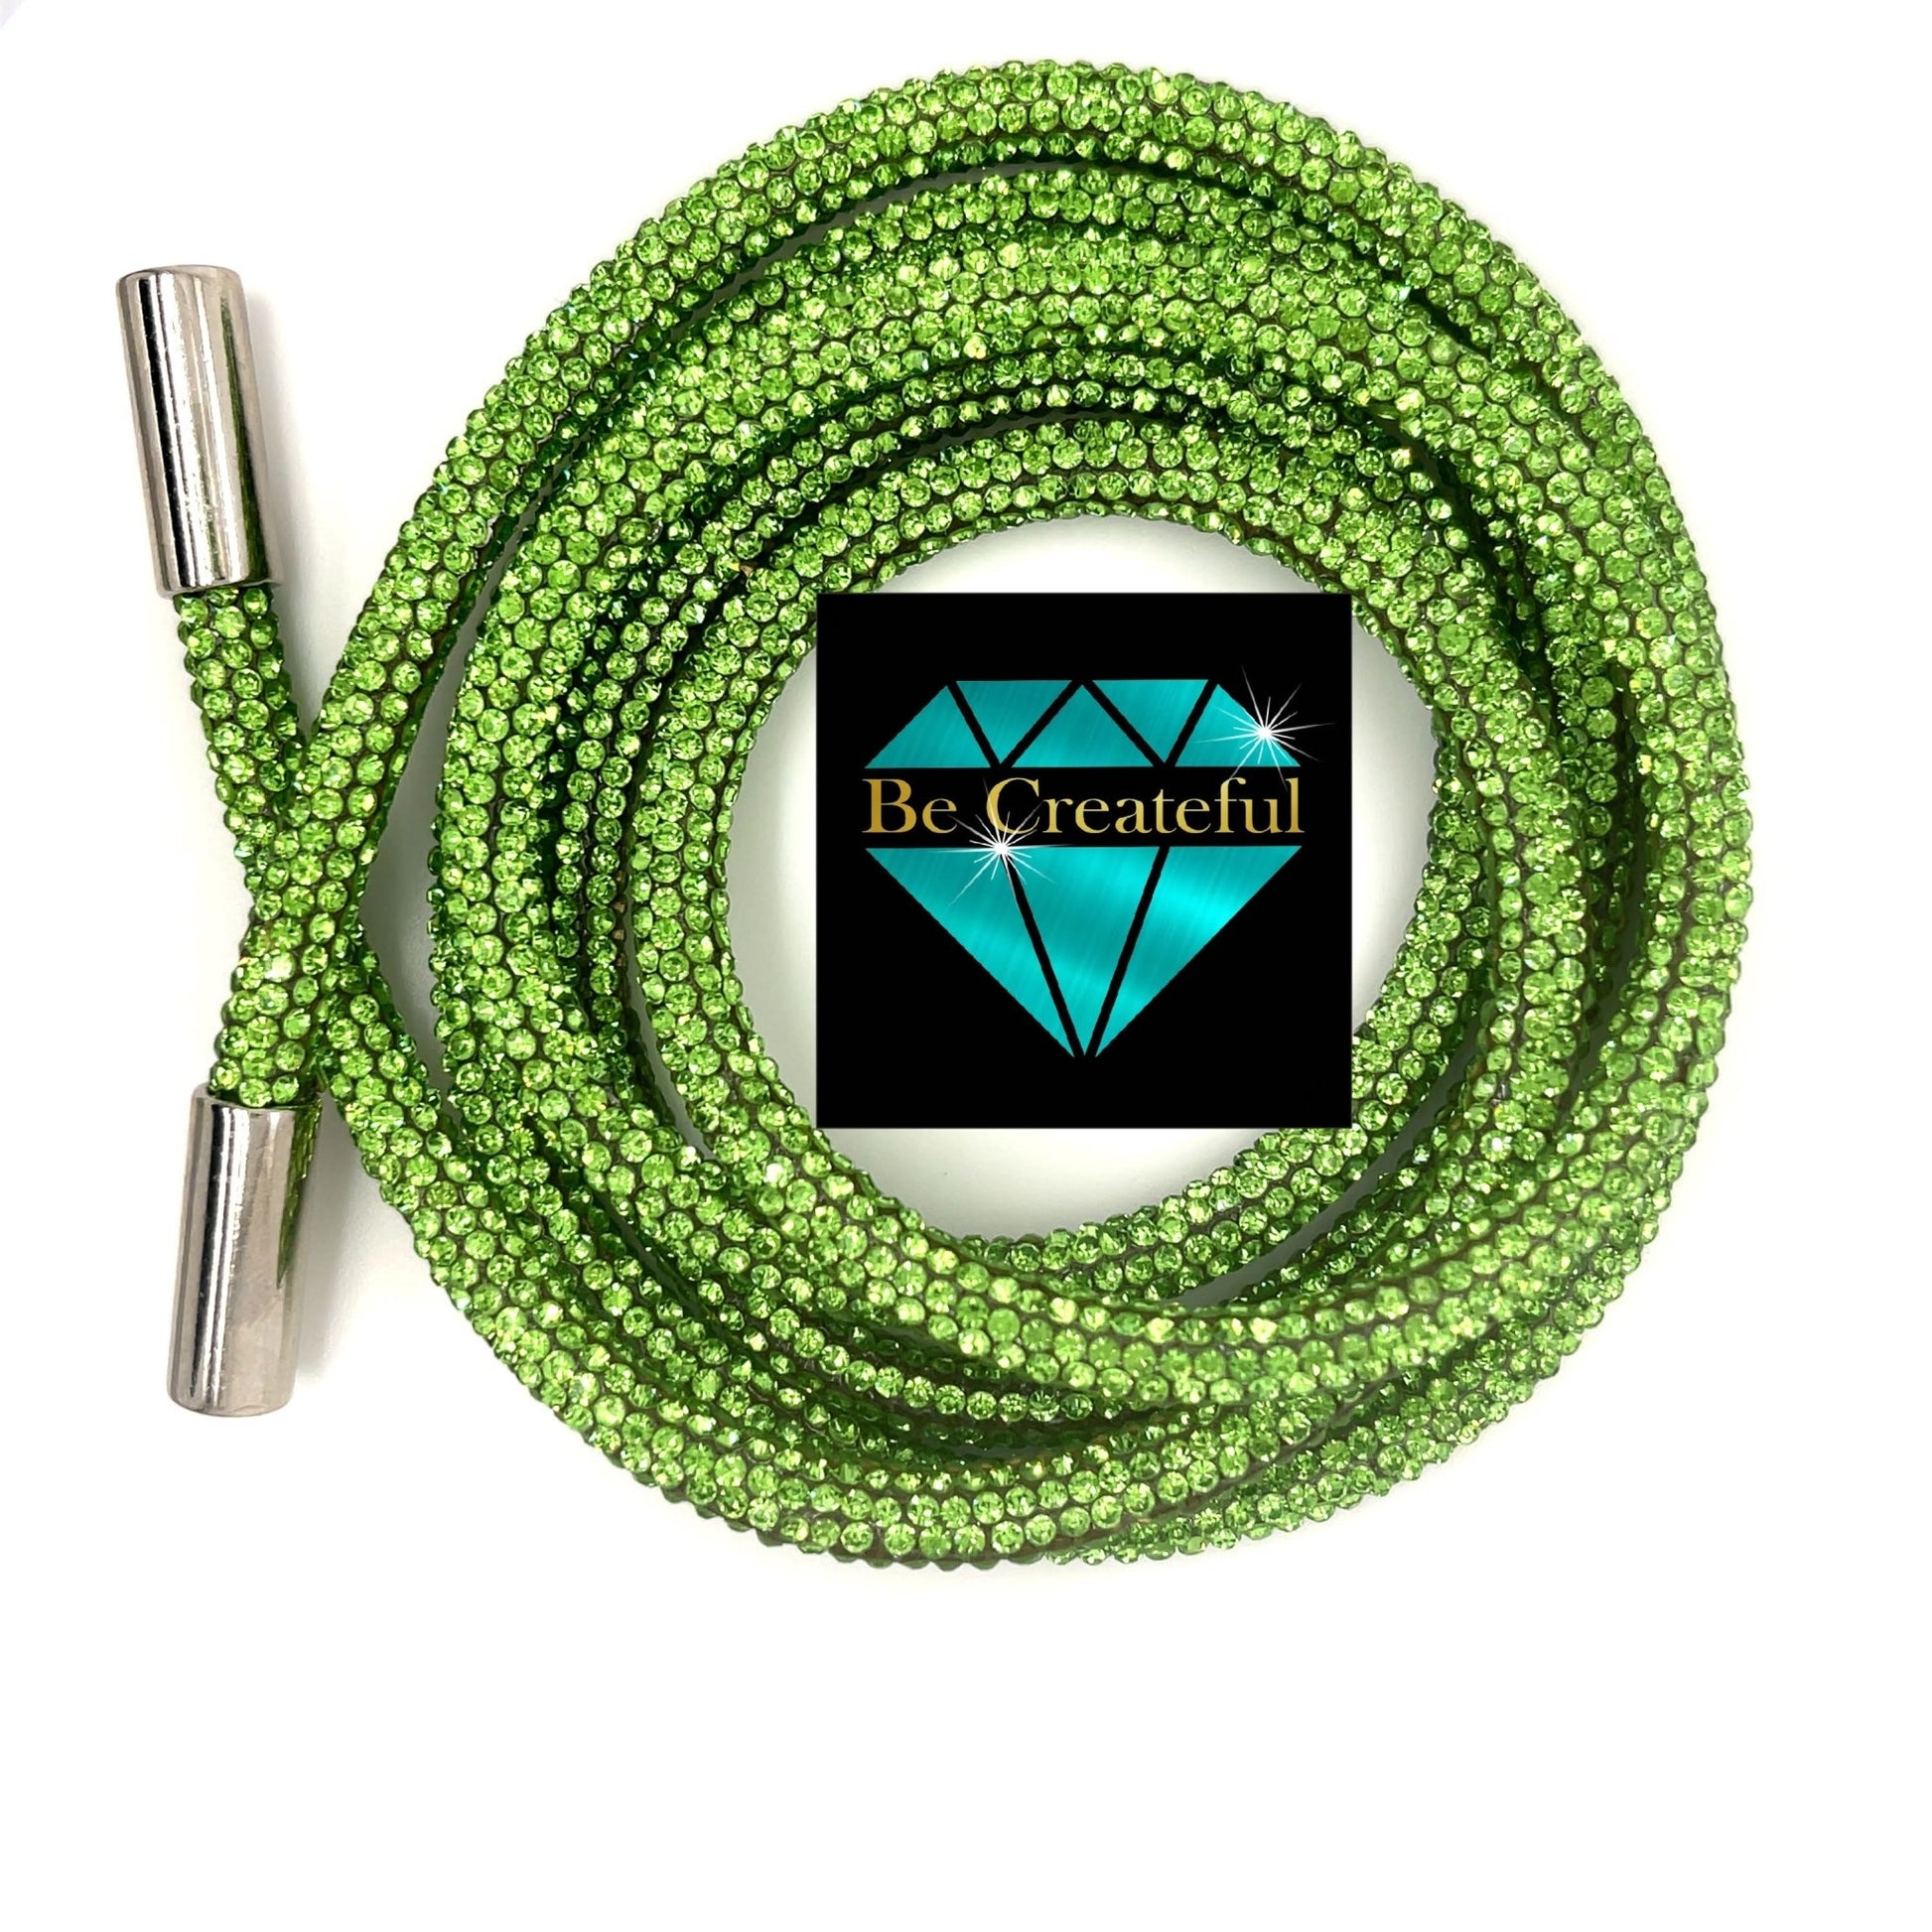  Bling Crystal Rhinestone String Rope for Hoodies